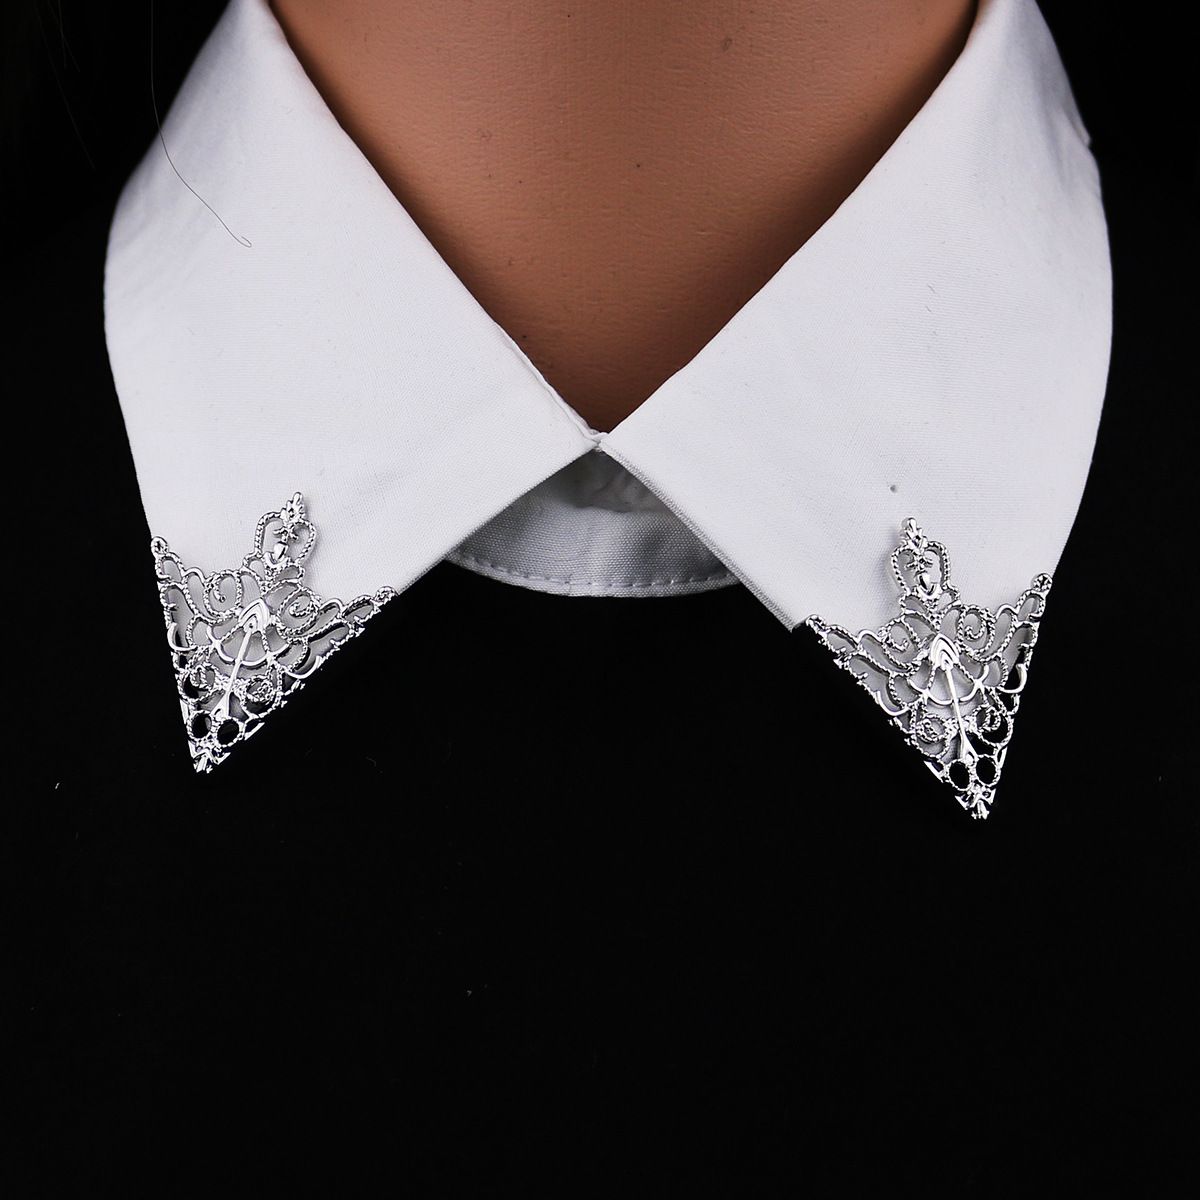 Vintage Triángulo Camisa Cuello Collar Broche Pins Para Hombres Y Mujeres Ahuecados Out Crown Broches Esquina Emblema Joyería Accesorios De 1,99 € | DHgate